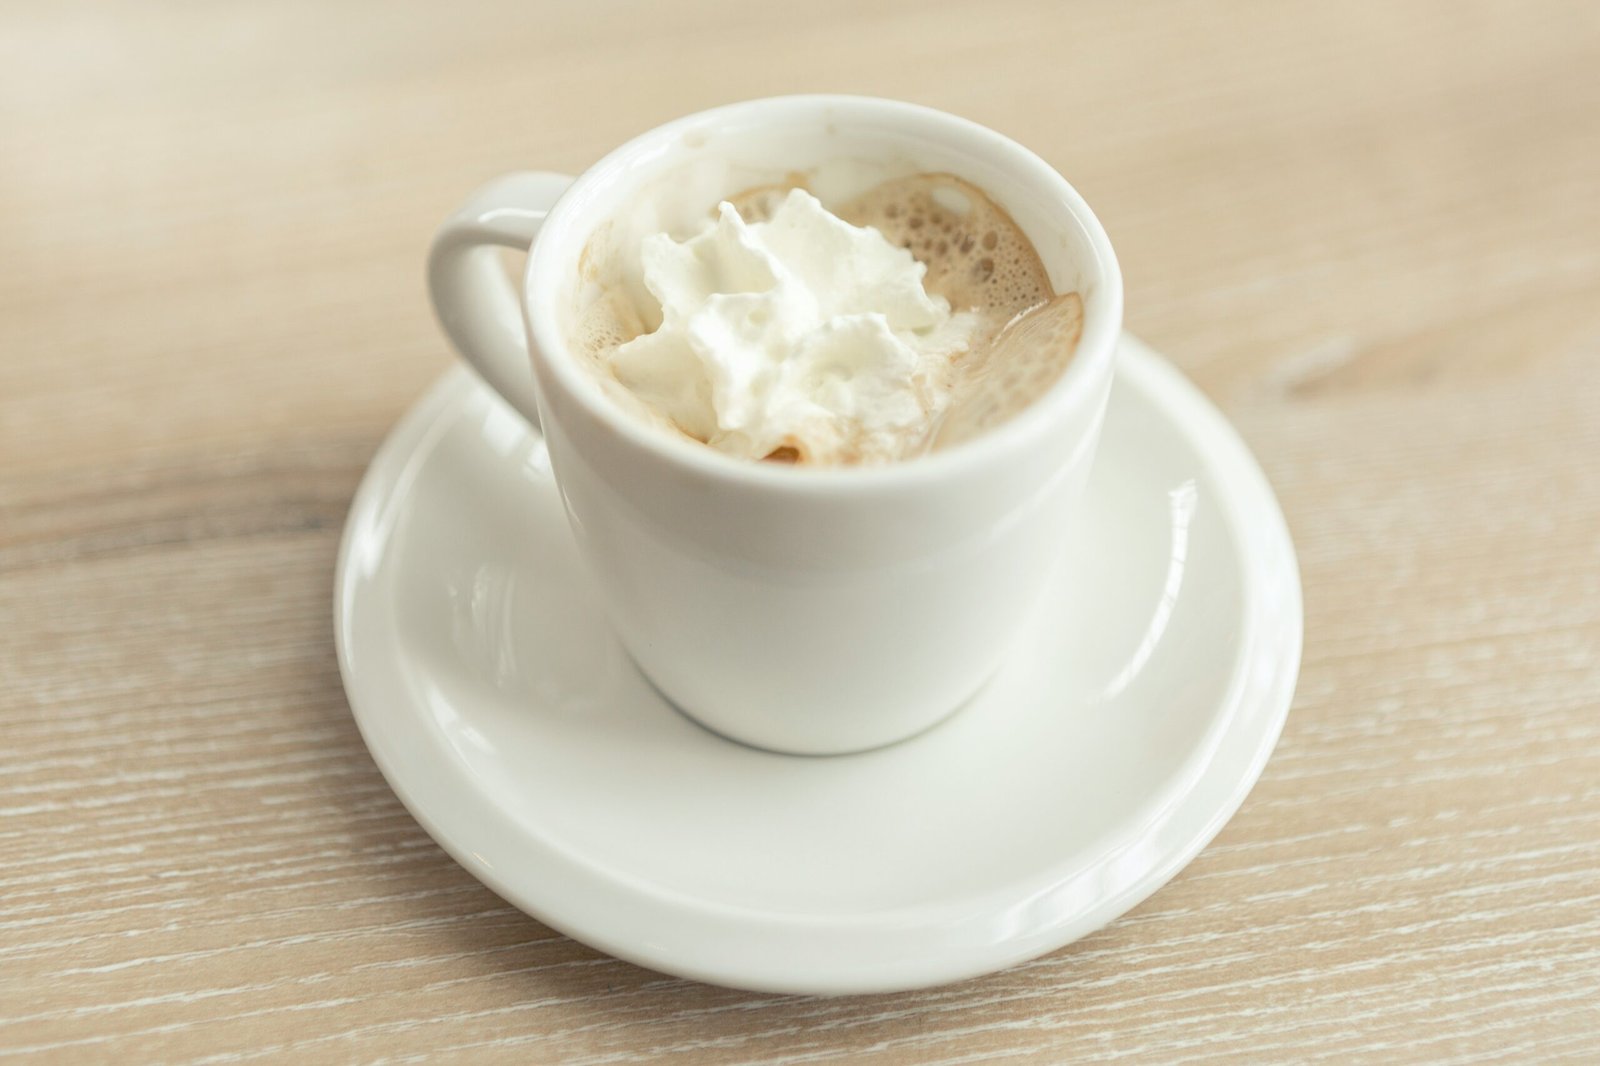 Descubra el espumador de leche perfecto para sus necesidades de café y disfrute de deliciosas bebidas espumosas en casa con nuestra selección de espumadores de leche de alta calidad.